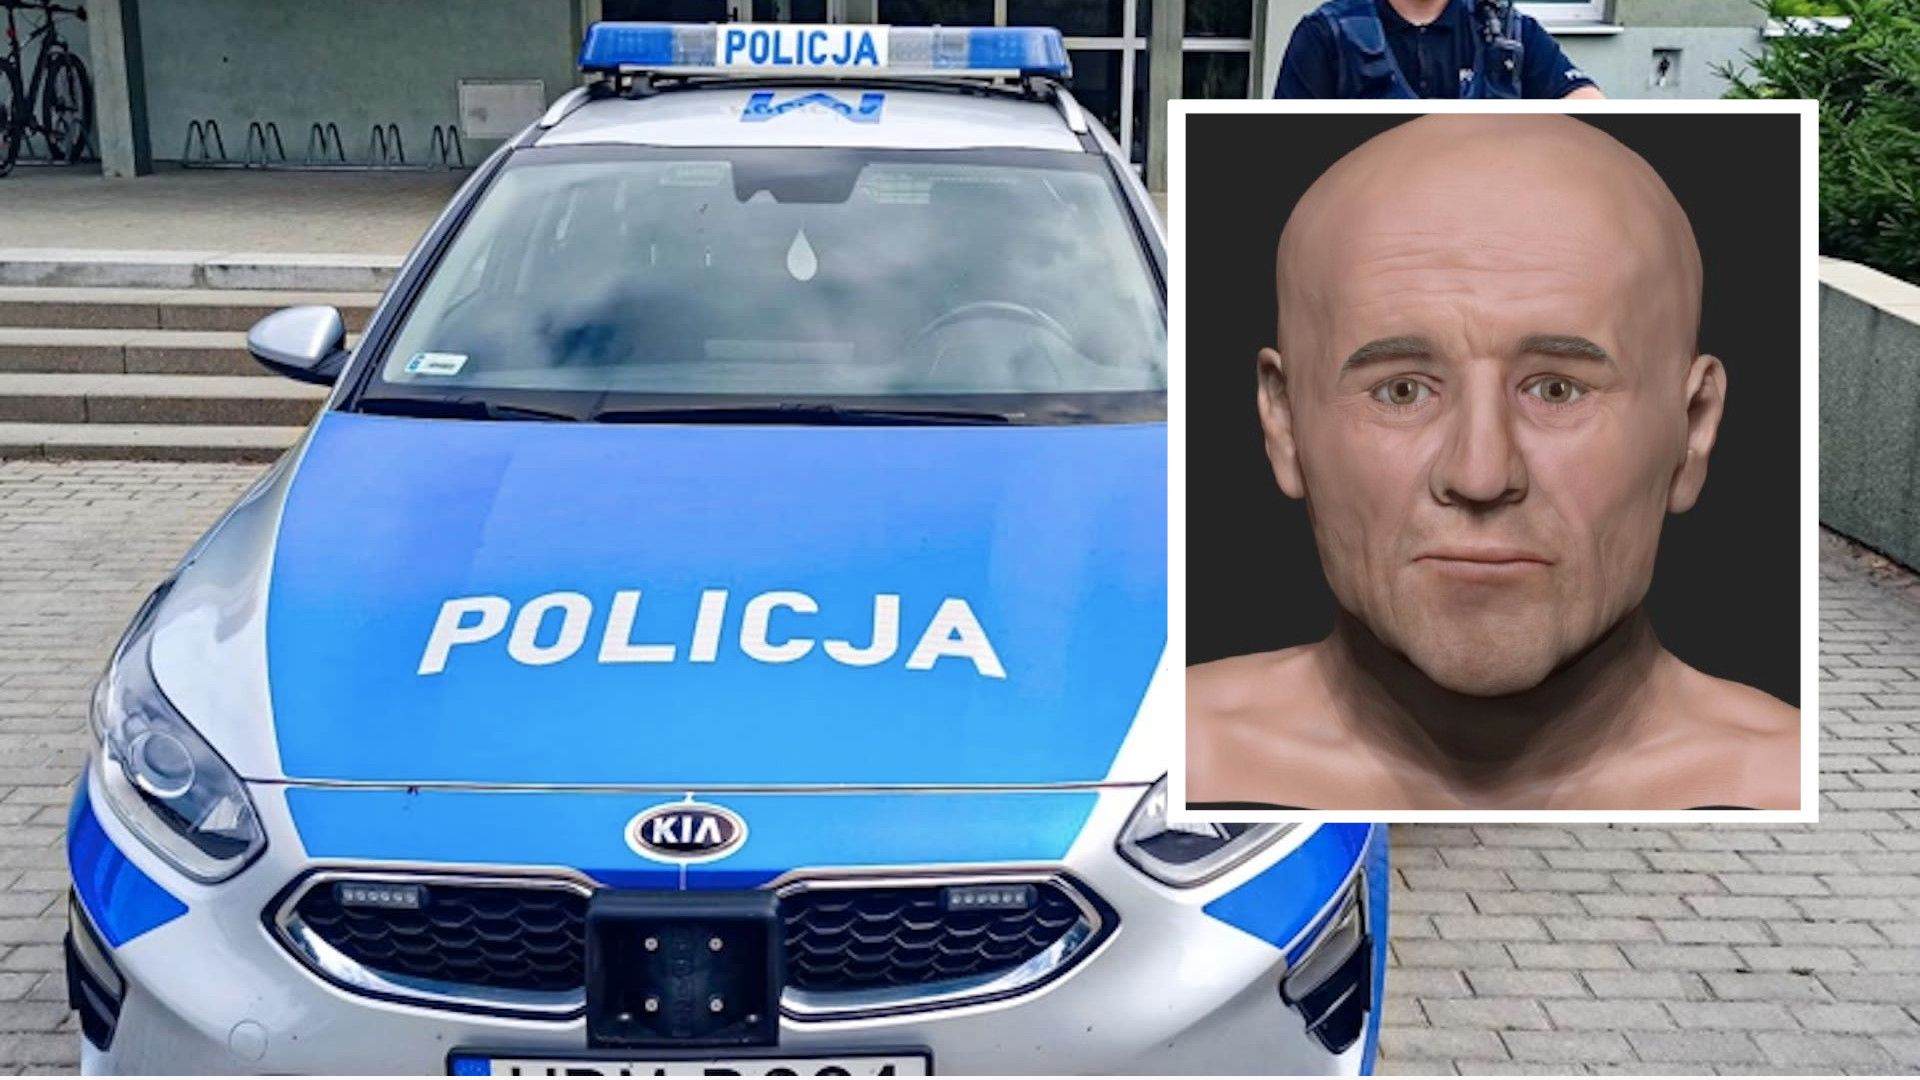 Wielkopolska policja publikuje możliwy wizerunek mężczyzny, którego szkielet znaleziono na poznańskich Jeżycach.